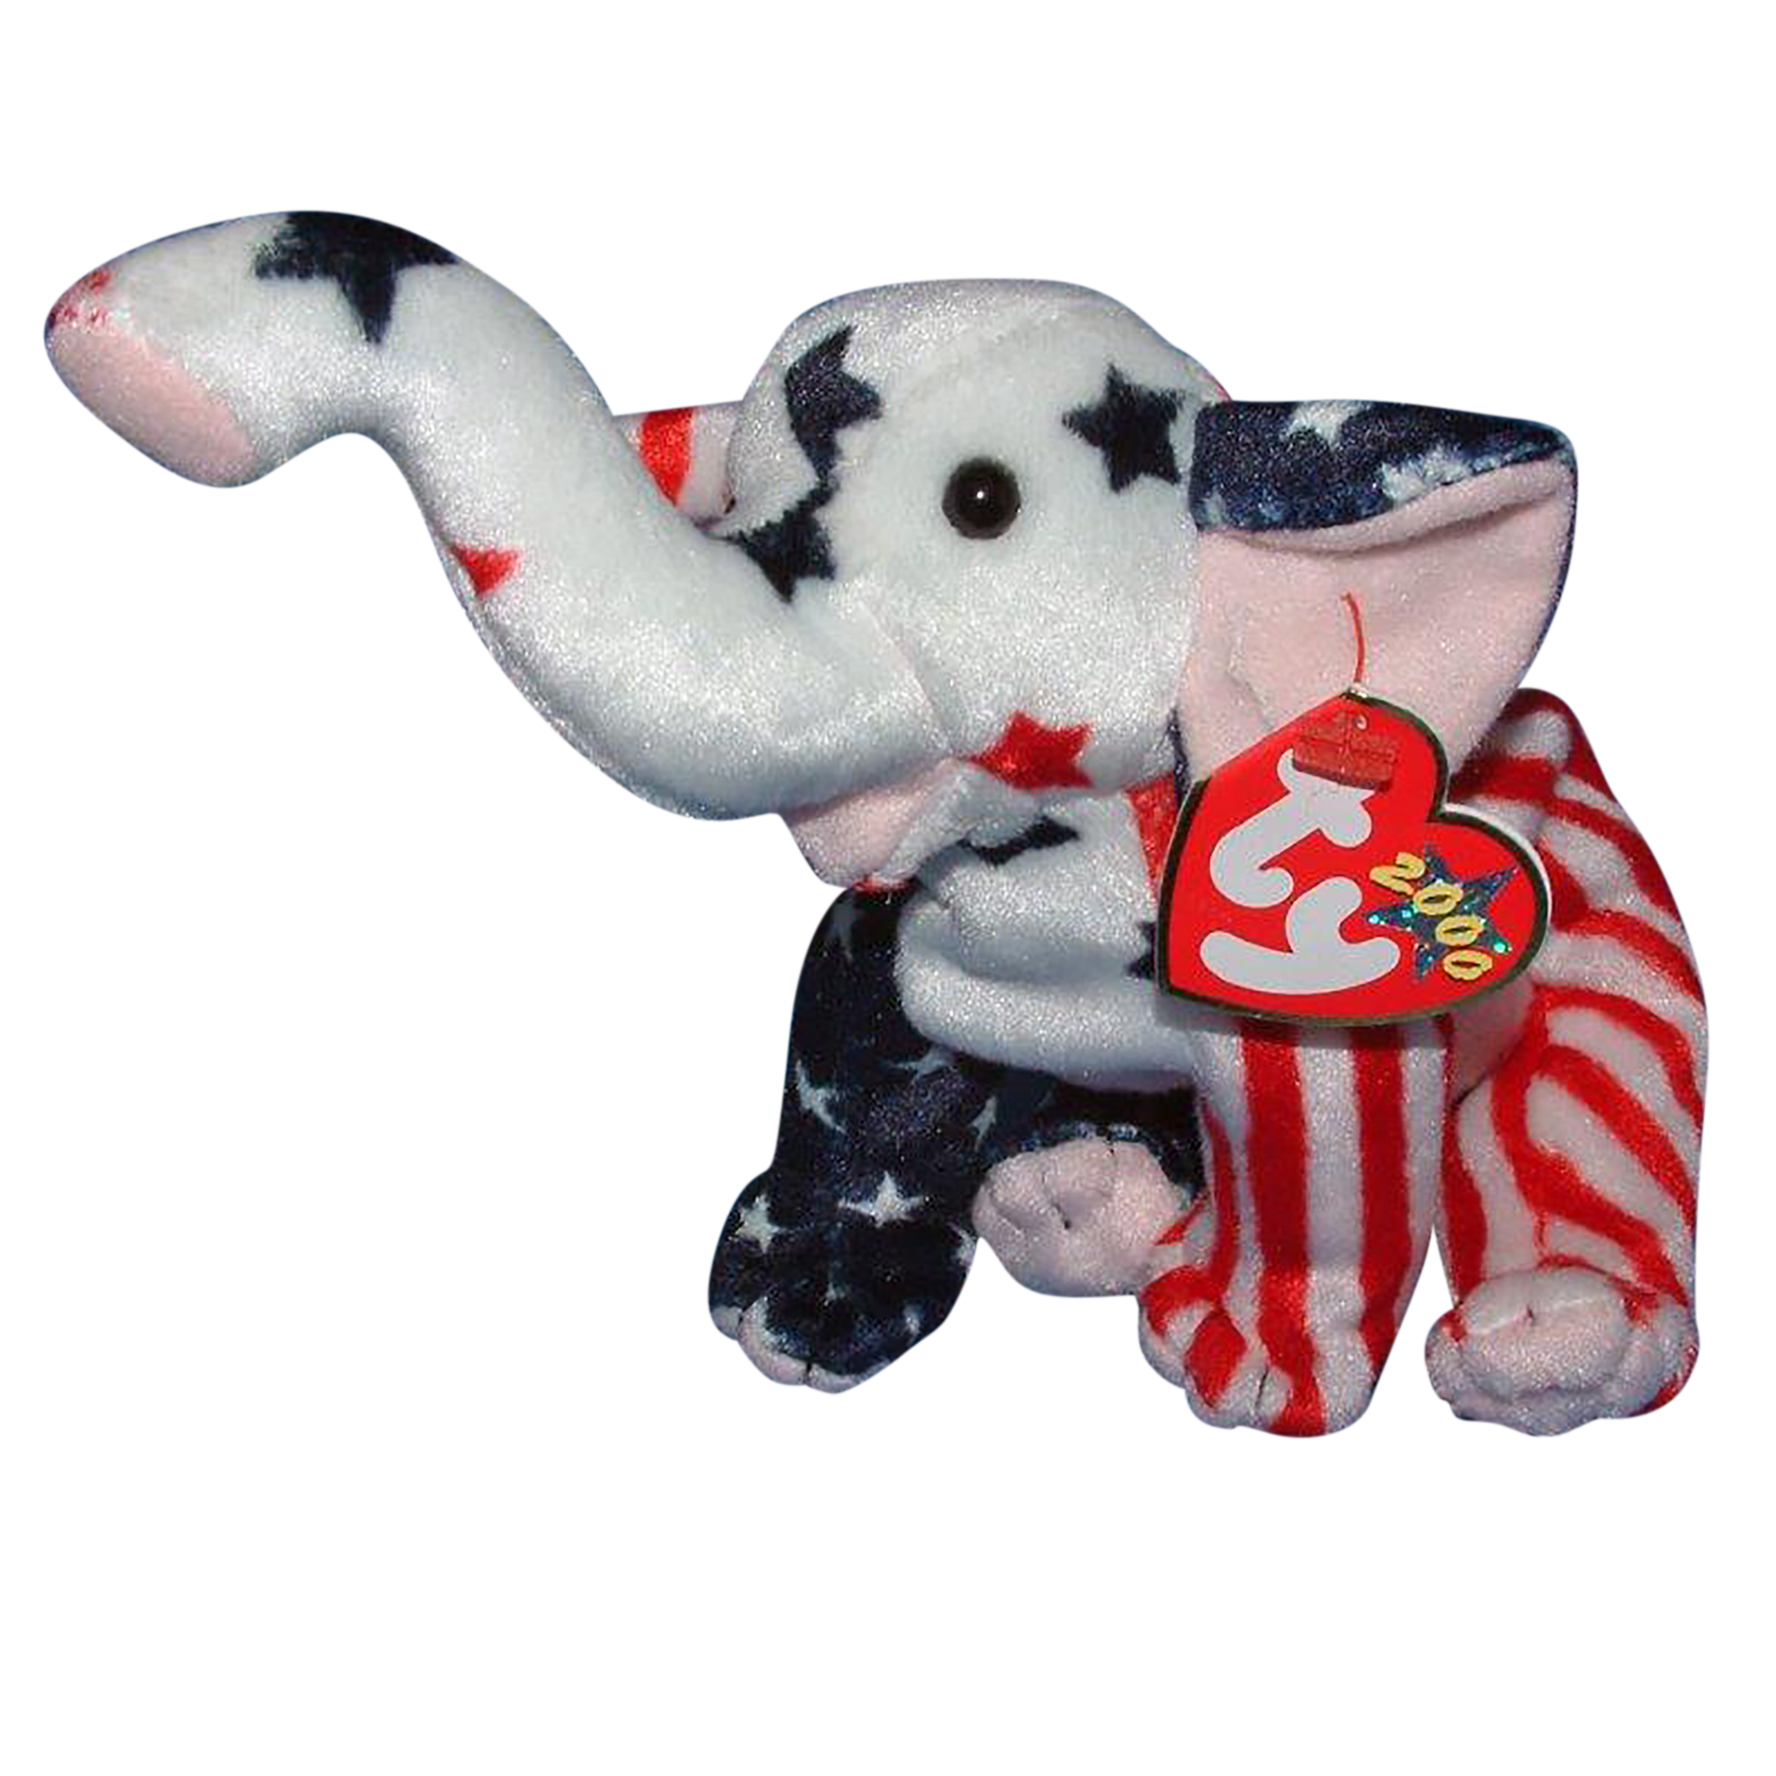 Ty Beanie Baby Righty 2000 - MWMT (Elephant) Patriotic | eBay